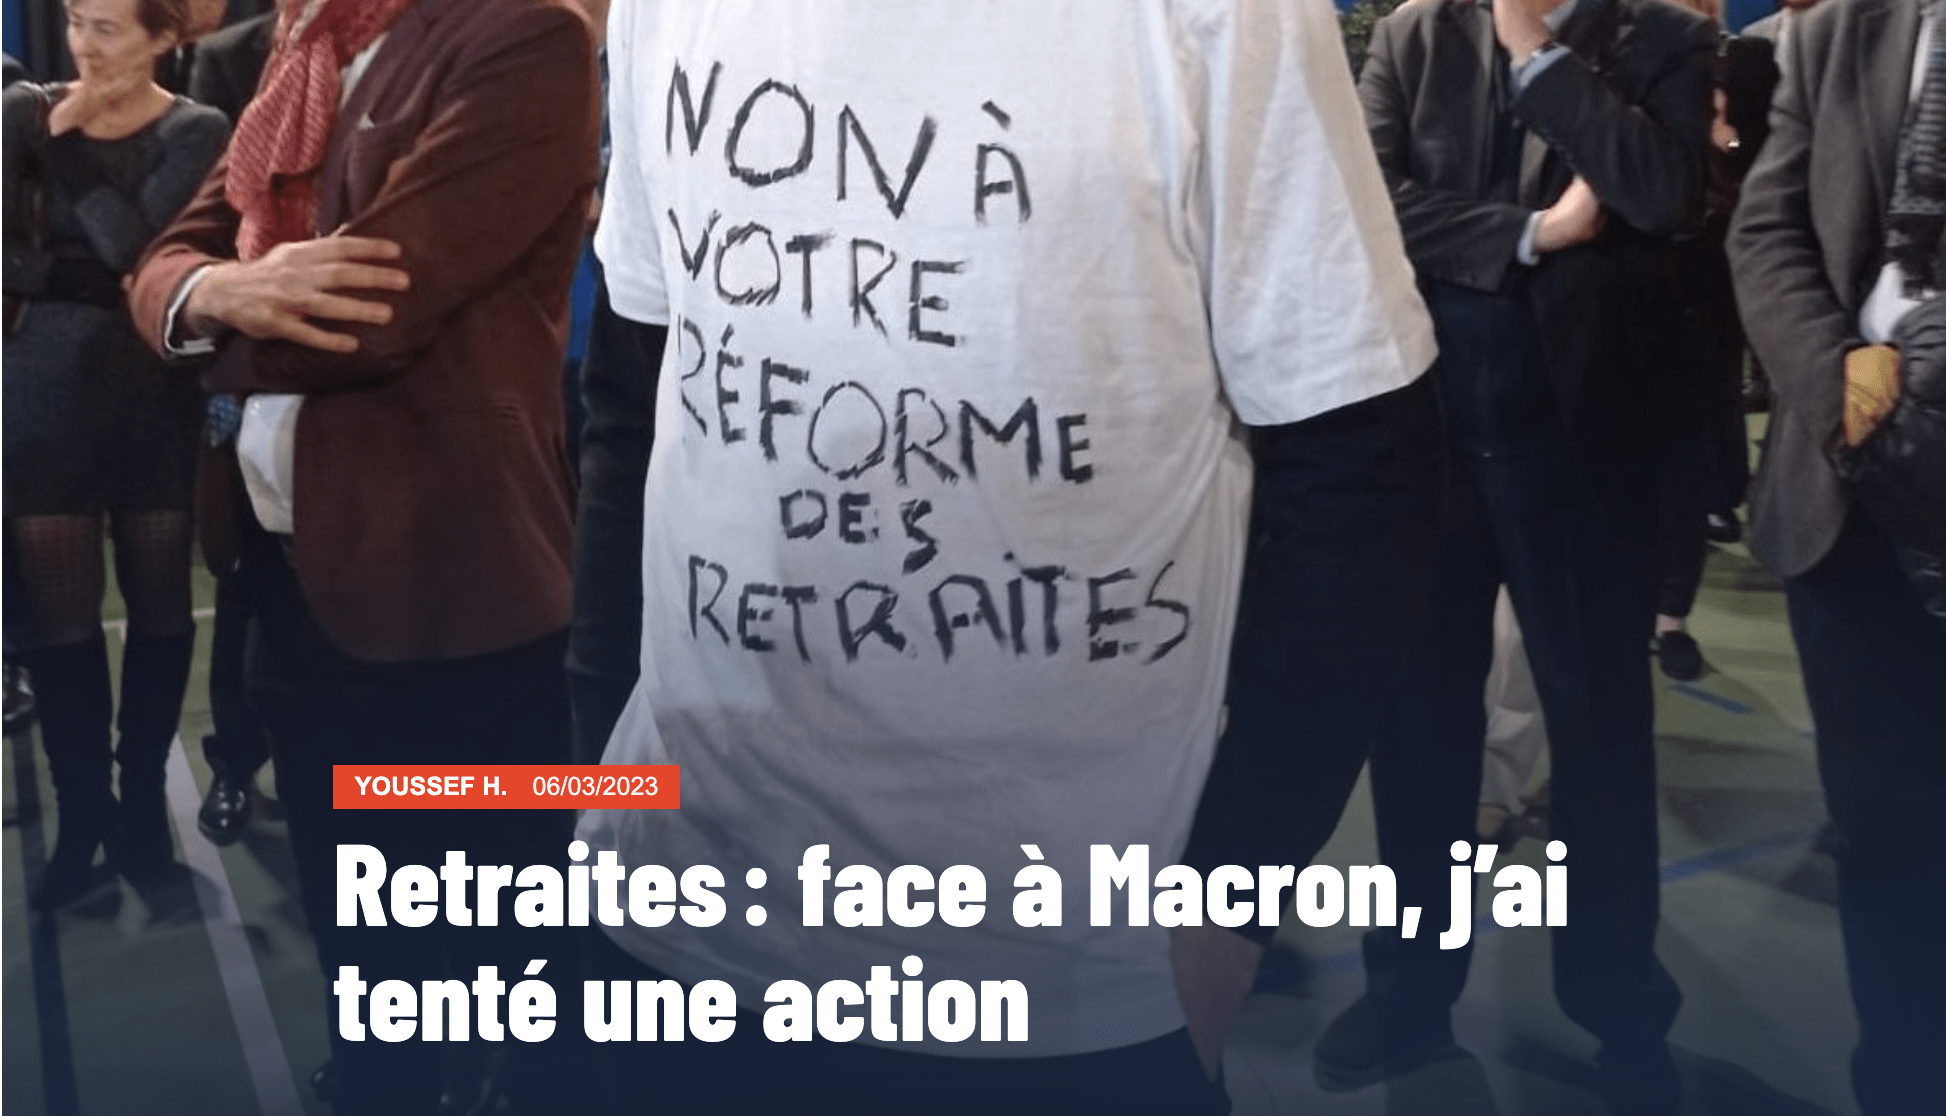 Capture d'écran de la miniature du témoignage "Retraites : face à Macron, j'ai tenté une action". On peut y voir un t-shirt où il est écrit "Non à votre réforme des retraites". 